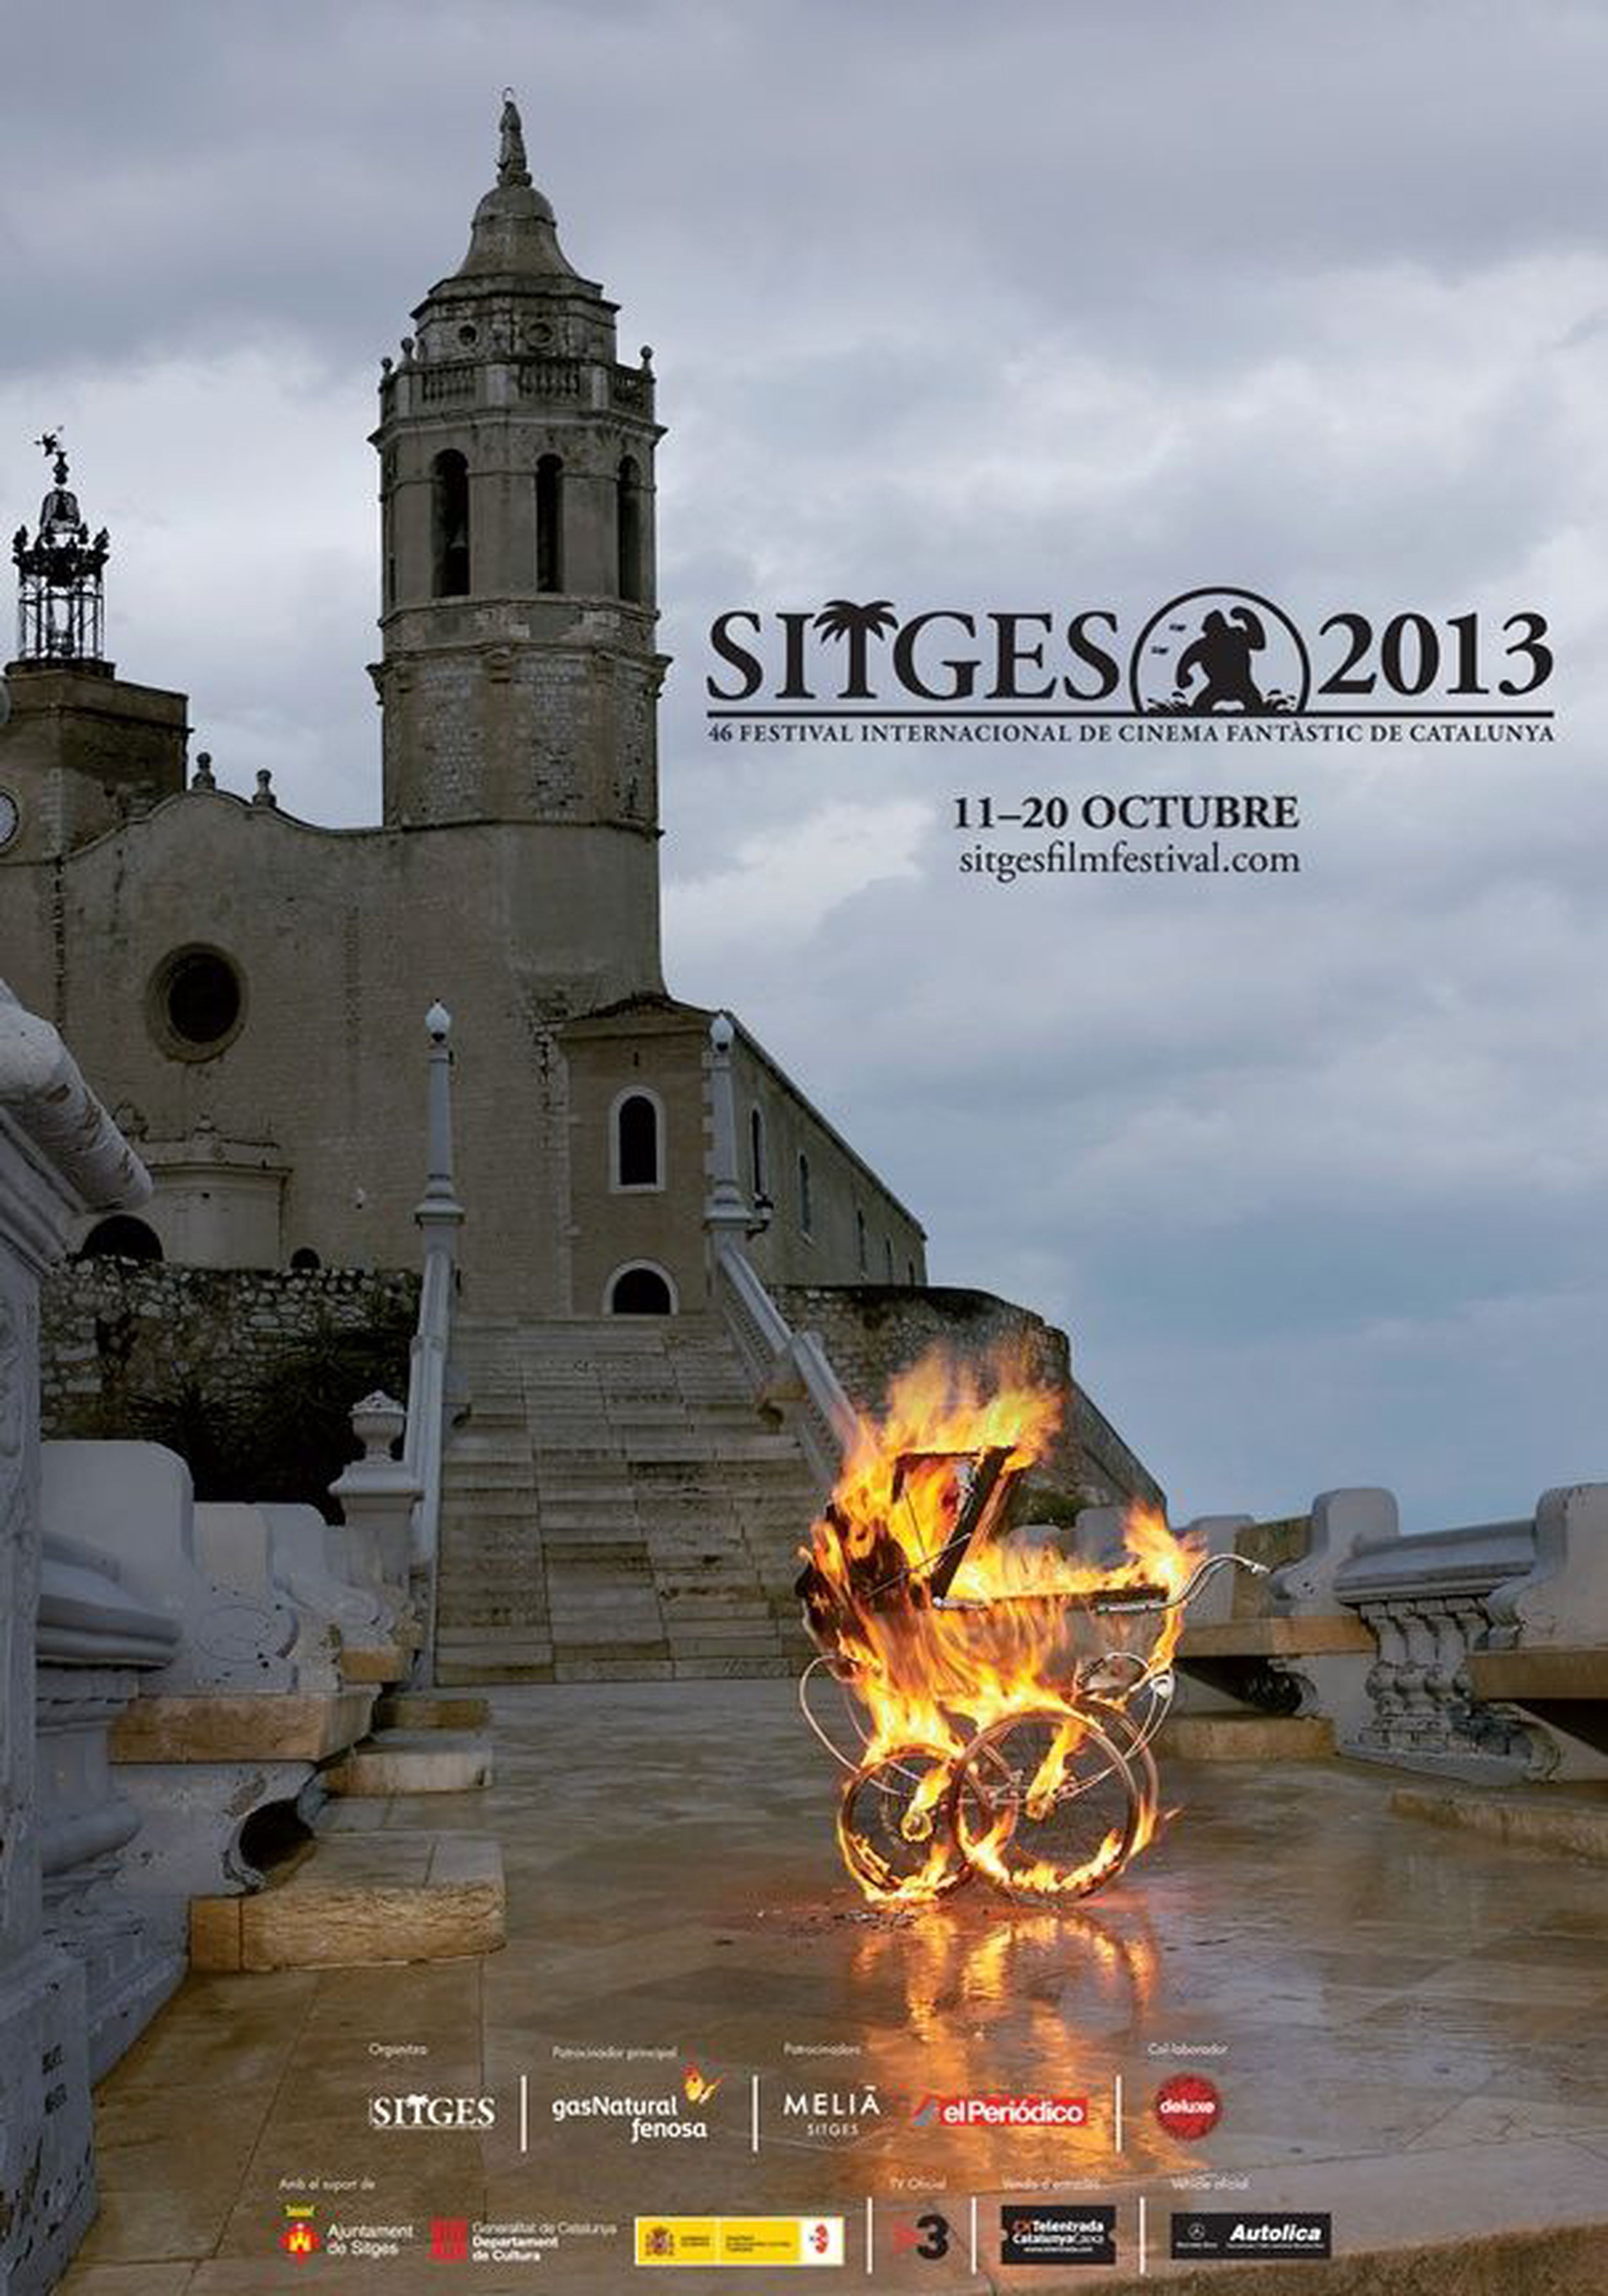 Sitges 2013 se inspira en La semilla del diablo